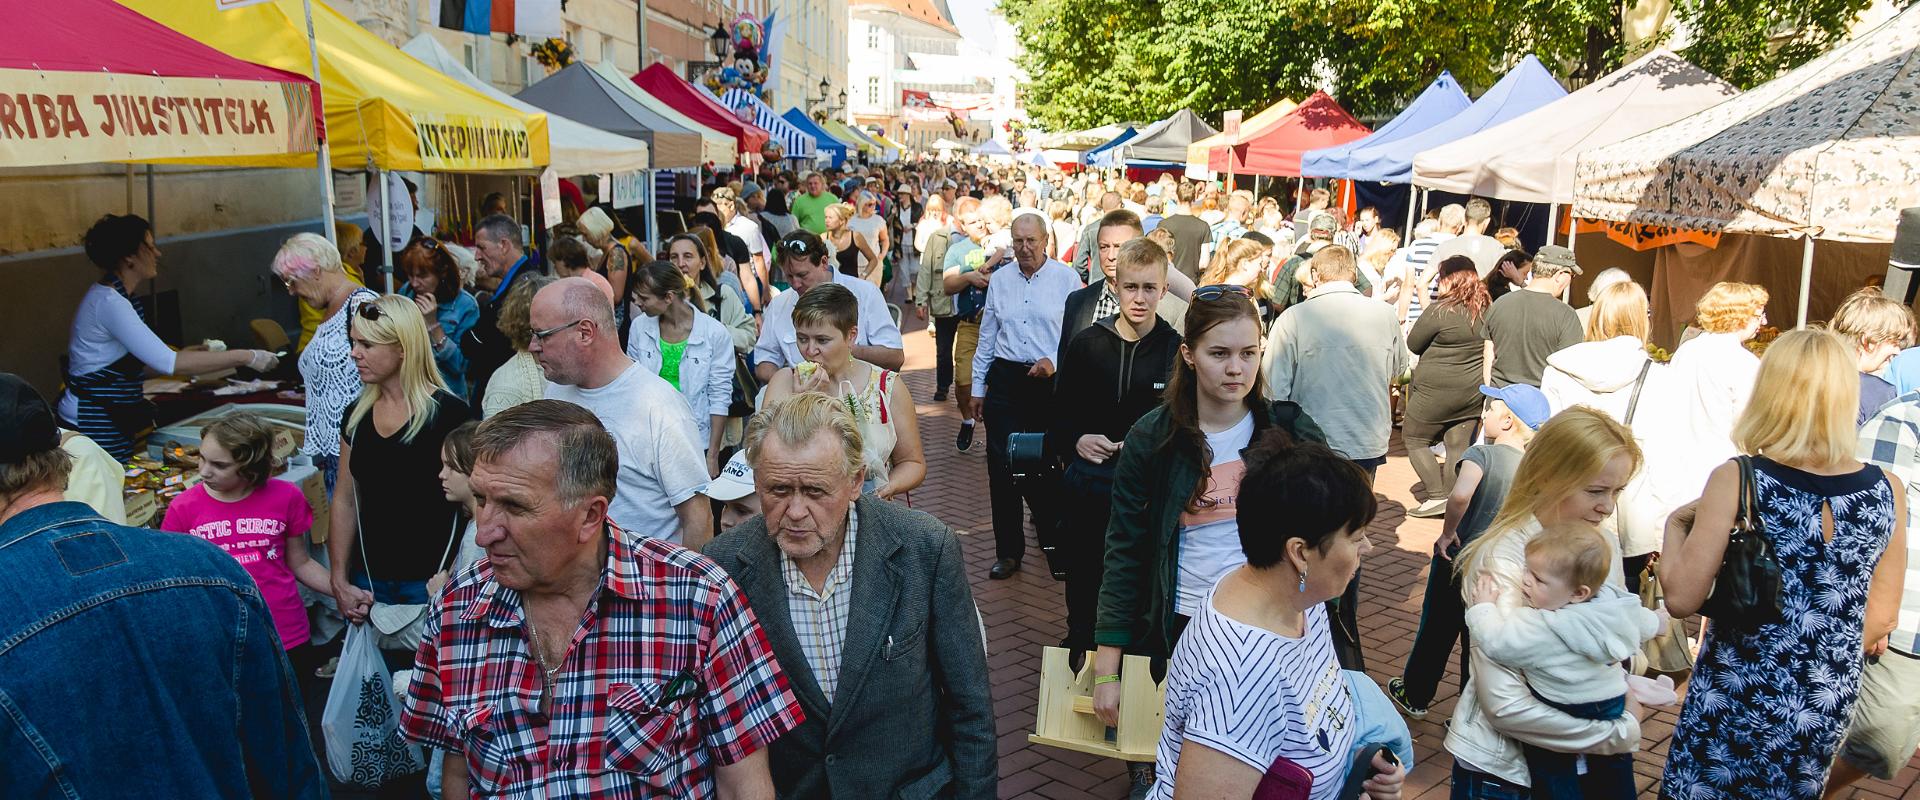 Autumn fair "Maarjalaat" in Tartu